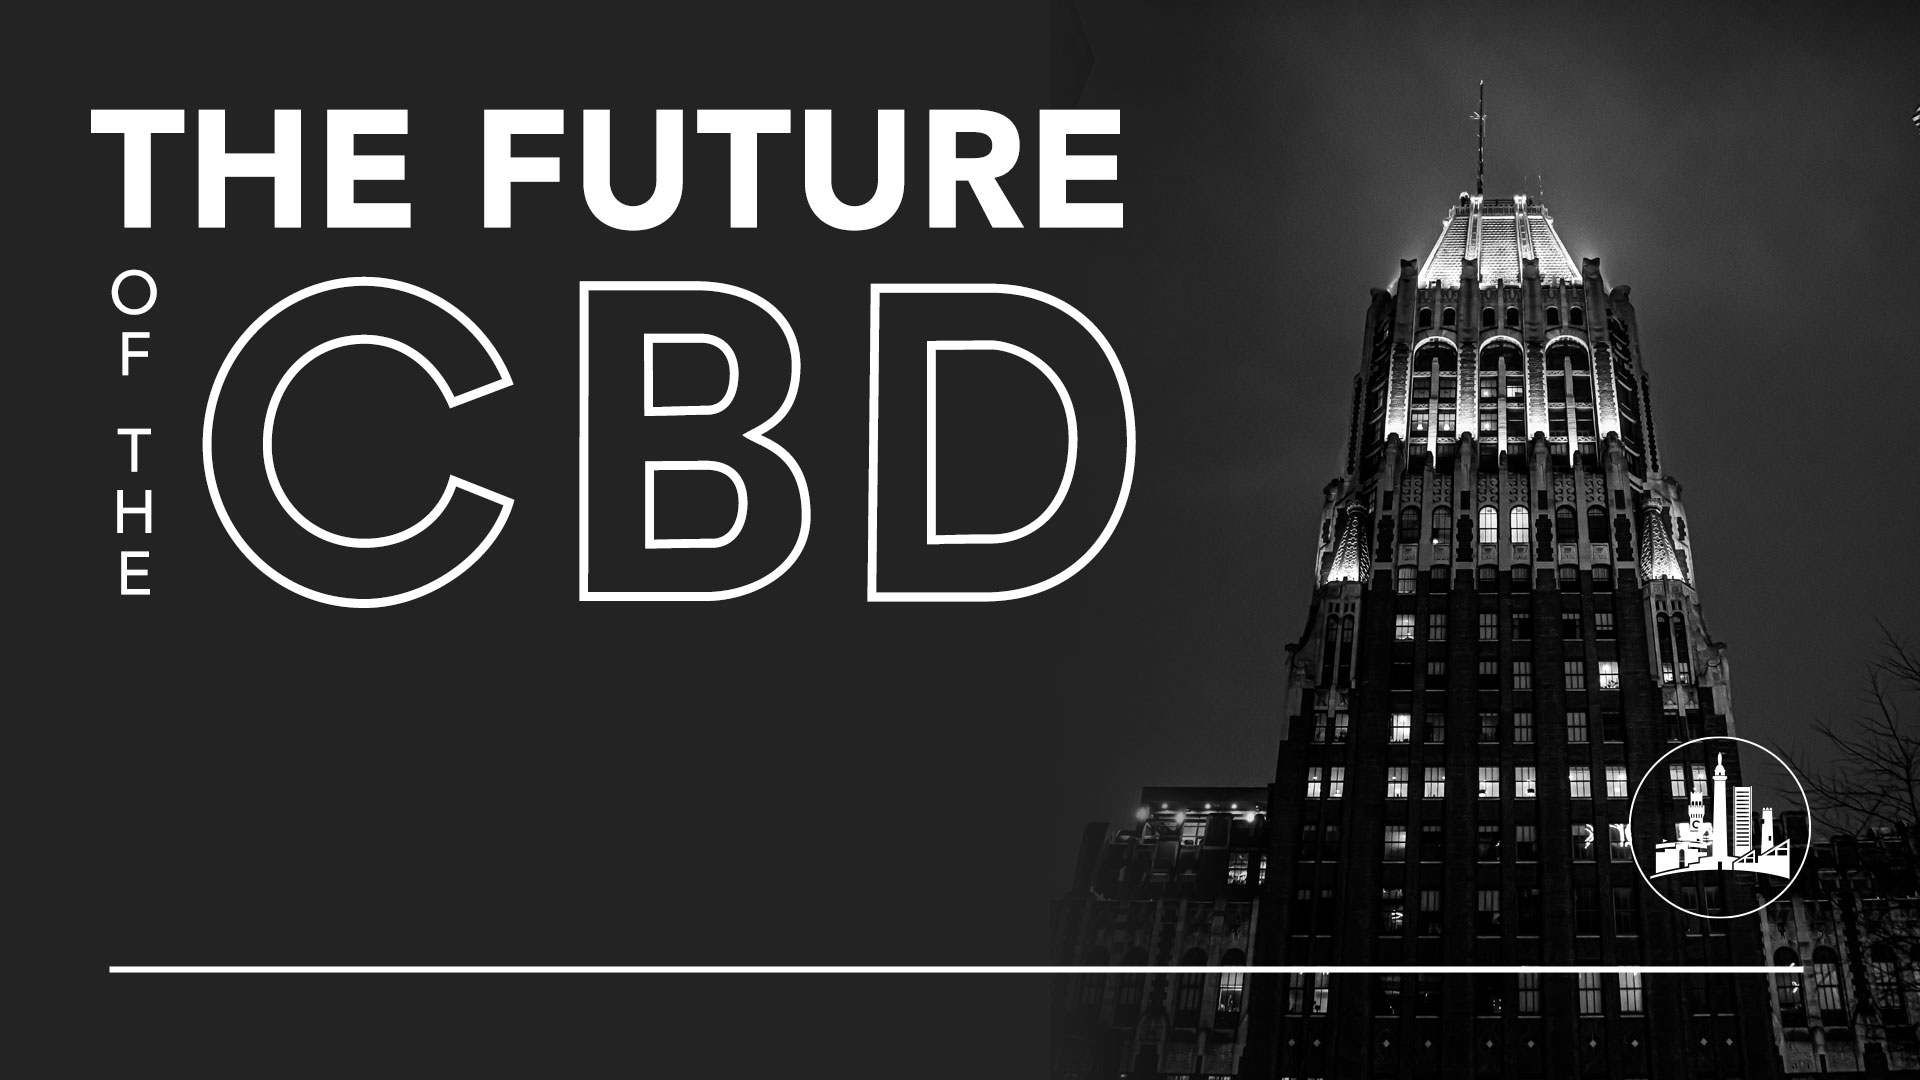 The Future of the CBD News Heading featuring Skyscraper